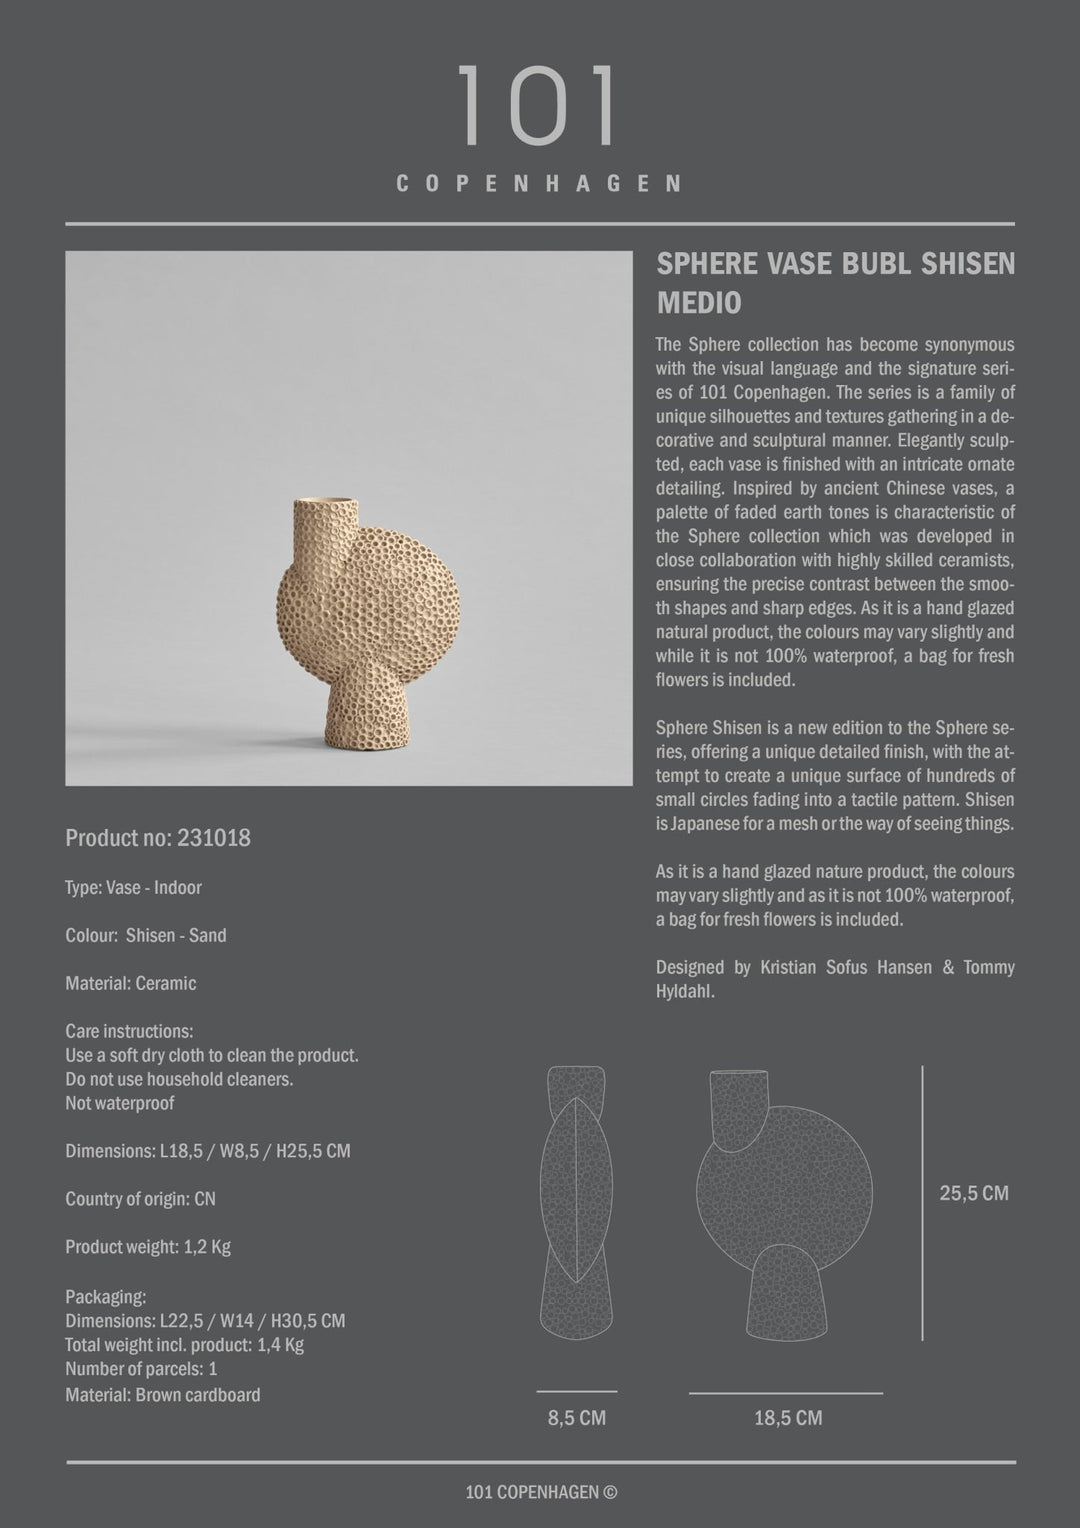 101 Copenhagen Sphere Vase Bubl Shisen - $85.00 - $250.00